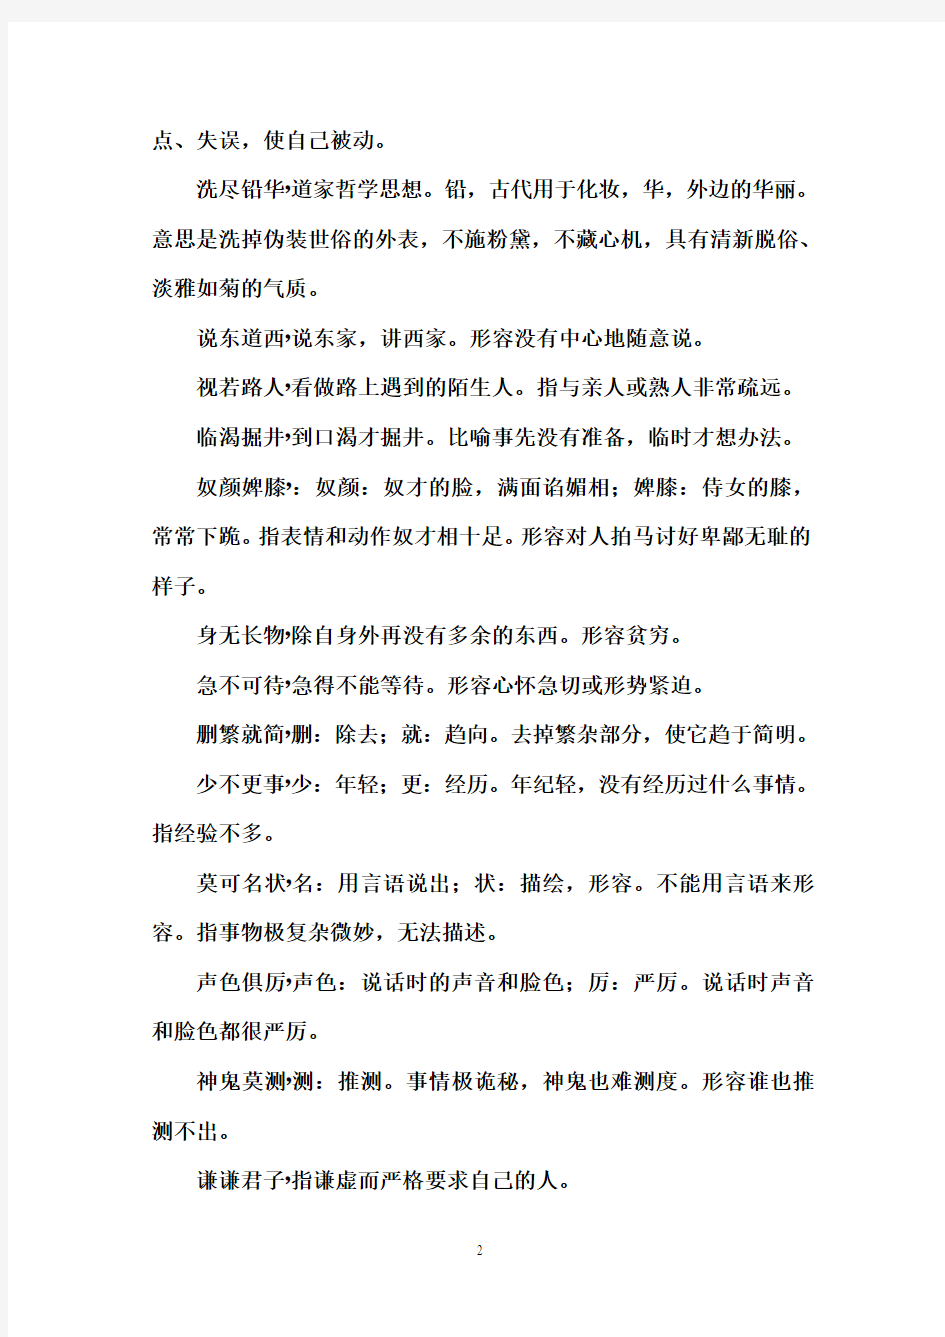 中国成语大会第十场成语详解汇编